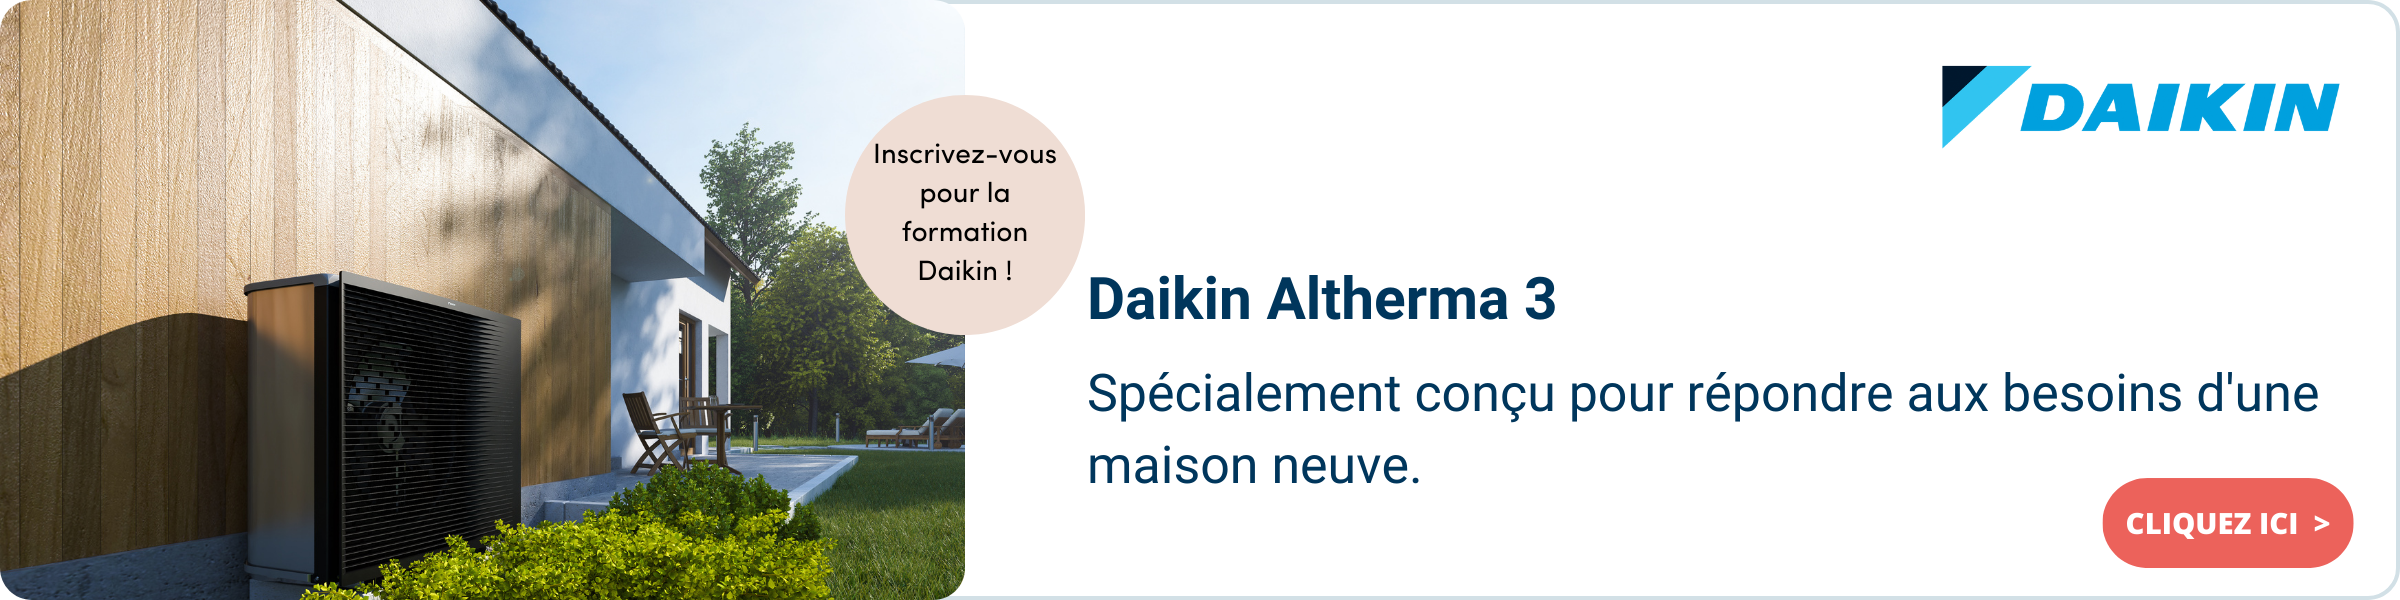 Daikin - Altherma FR.png